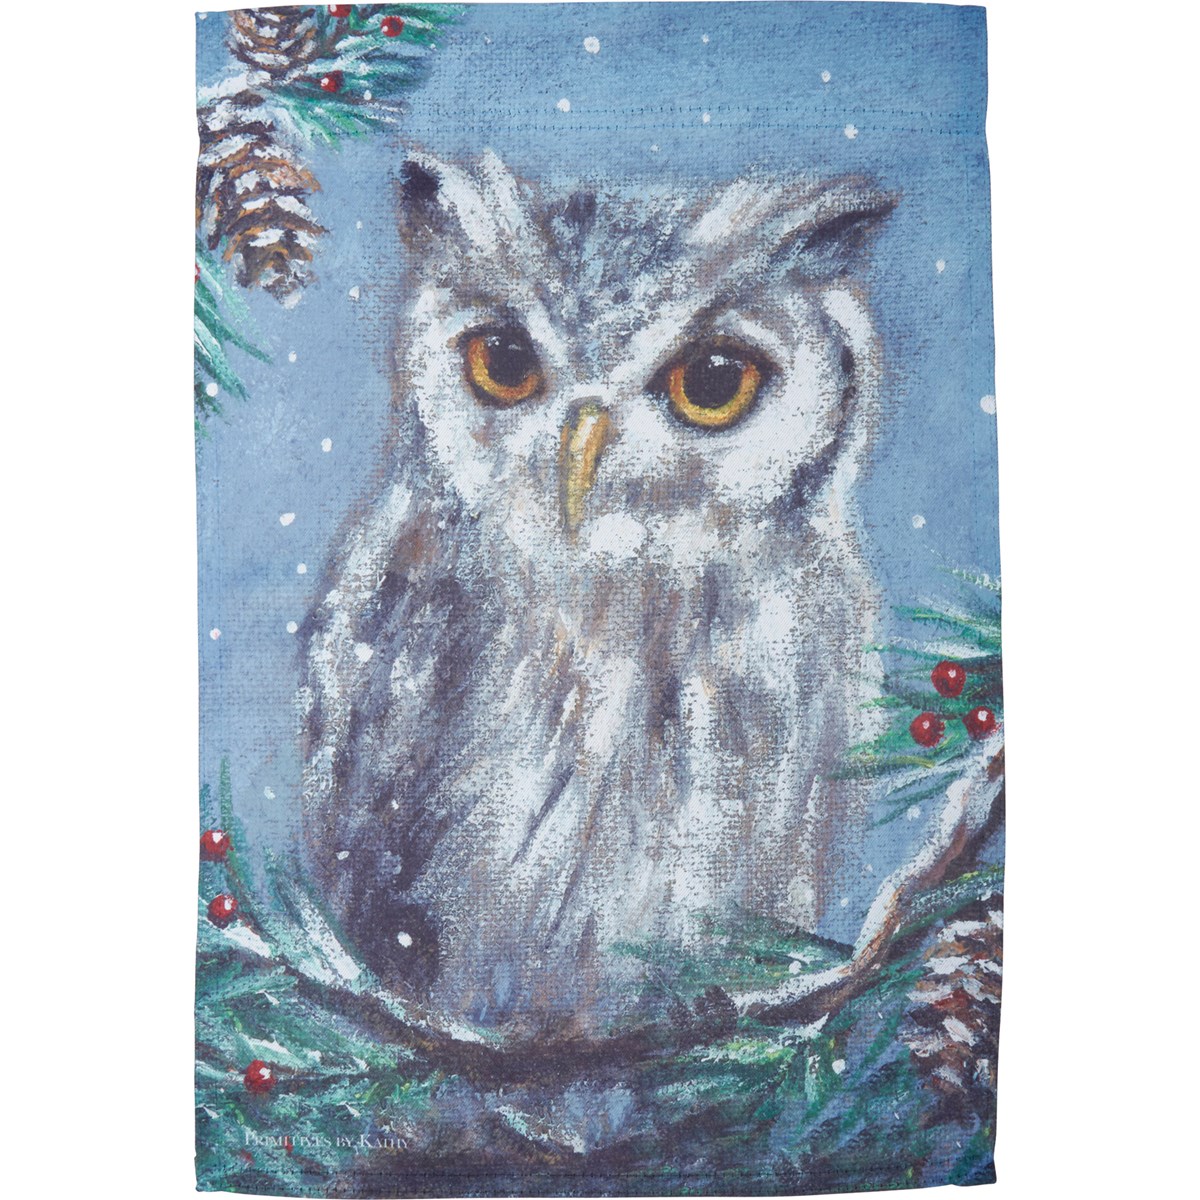 Owl Garden Flag - Polyester